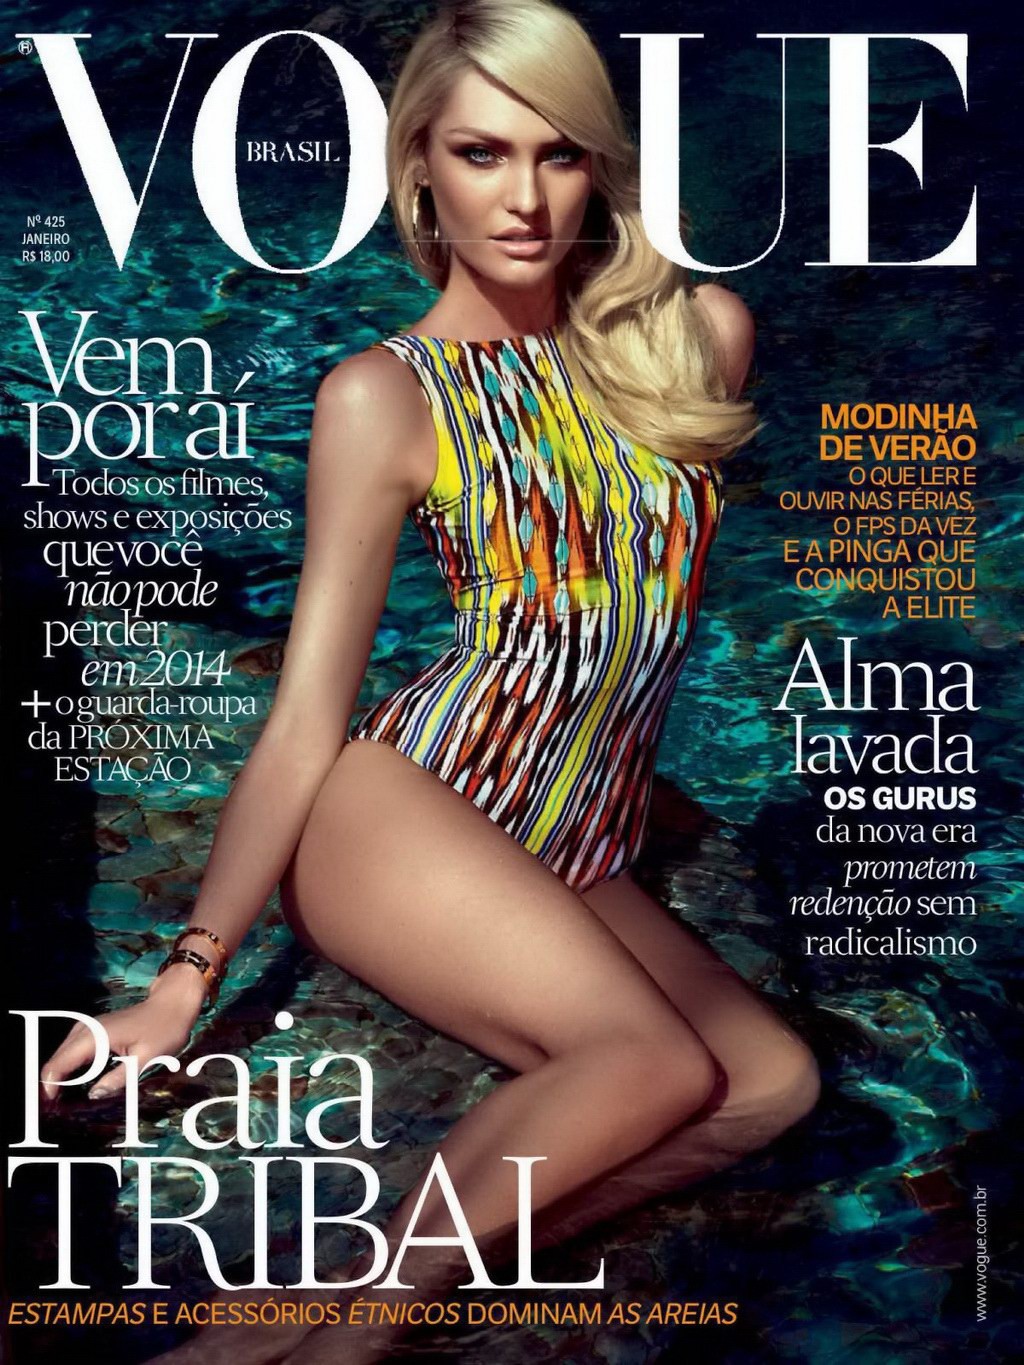 Candice swanepoel très sexy dans le photoshoot du magazine vogue au brésil
 #75208195